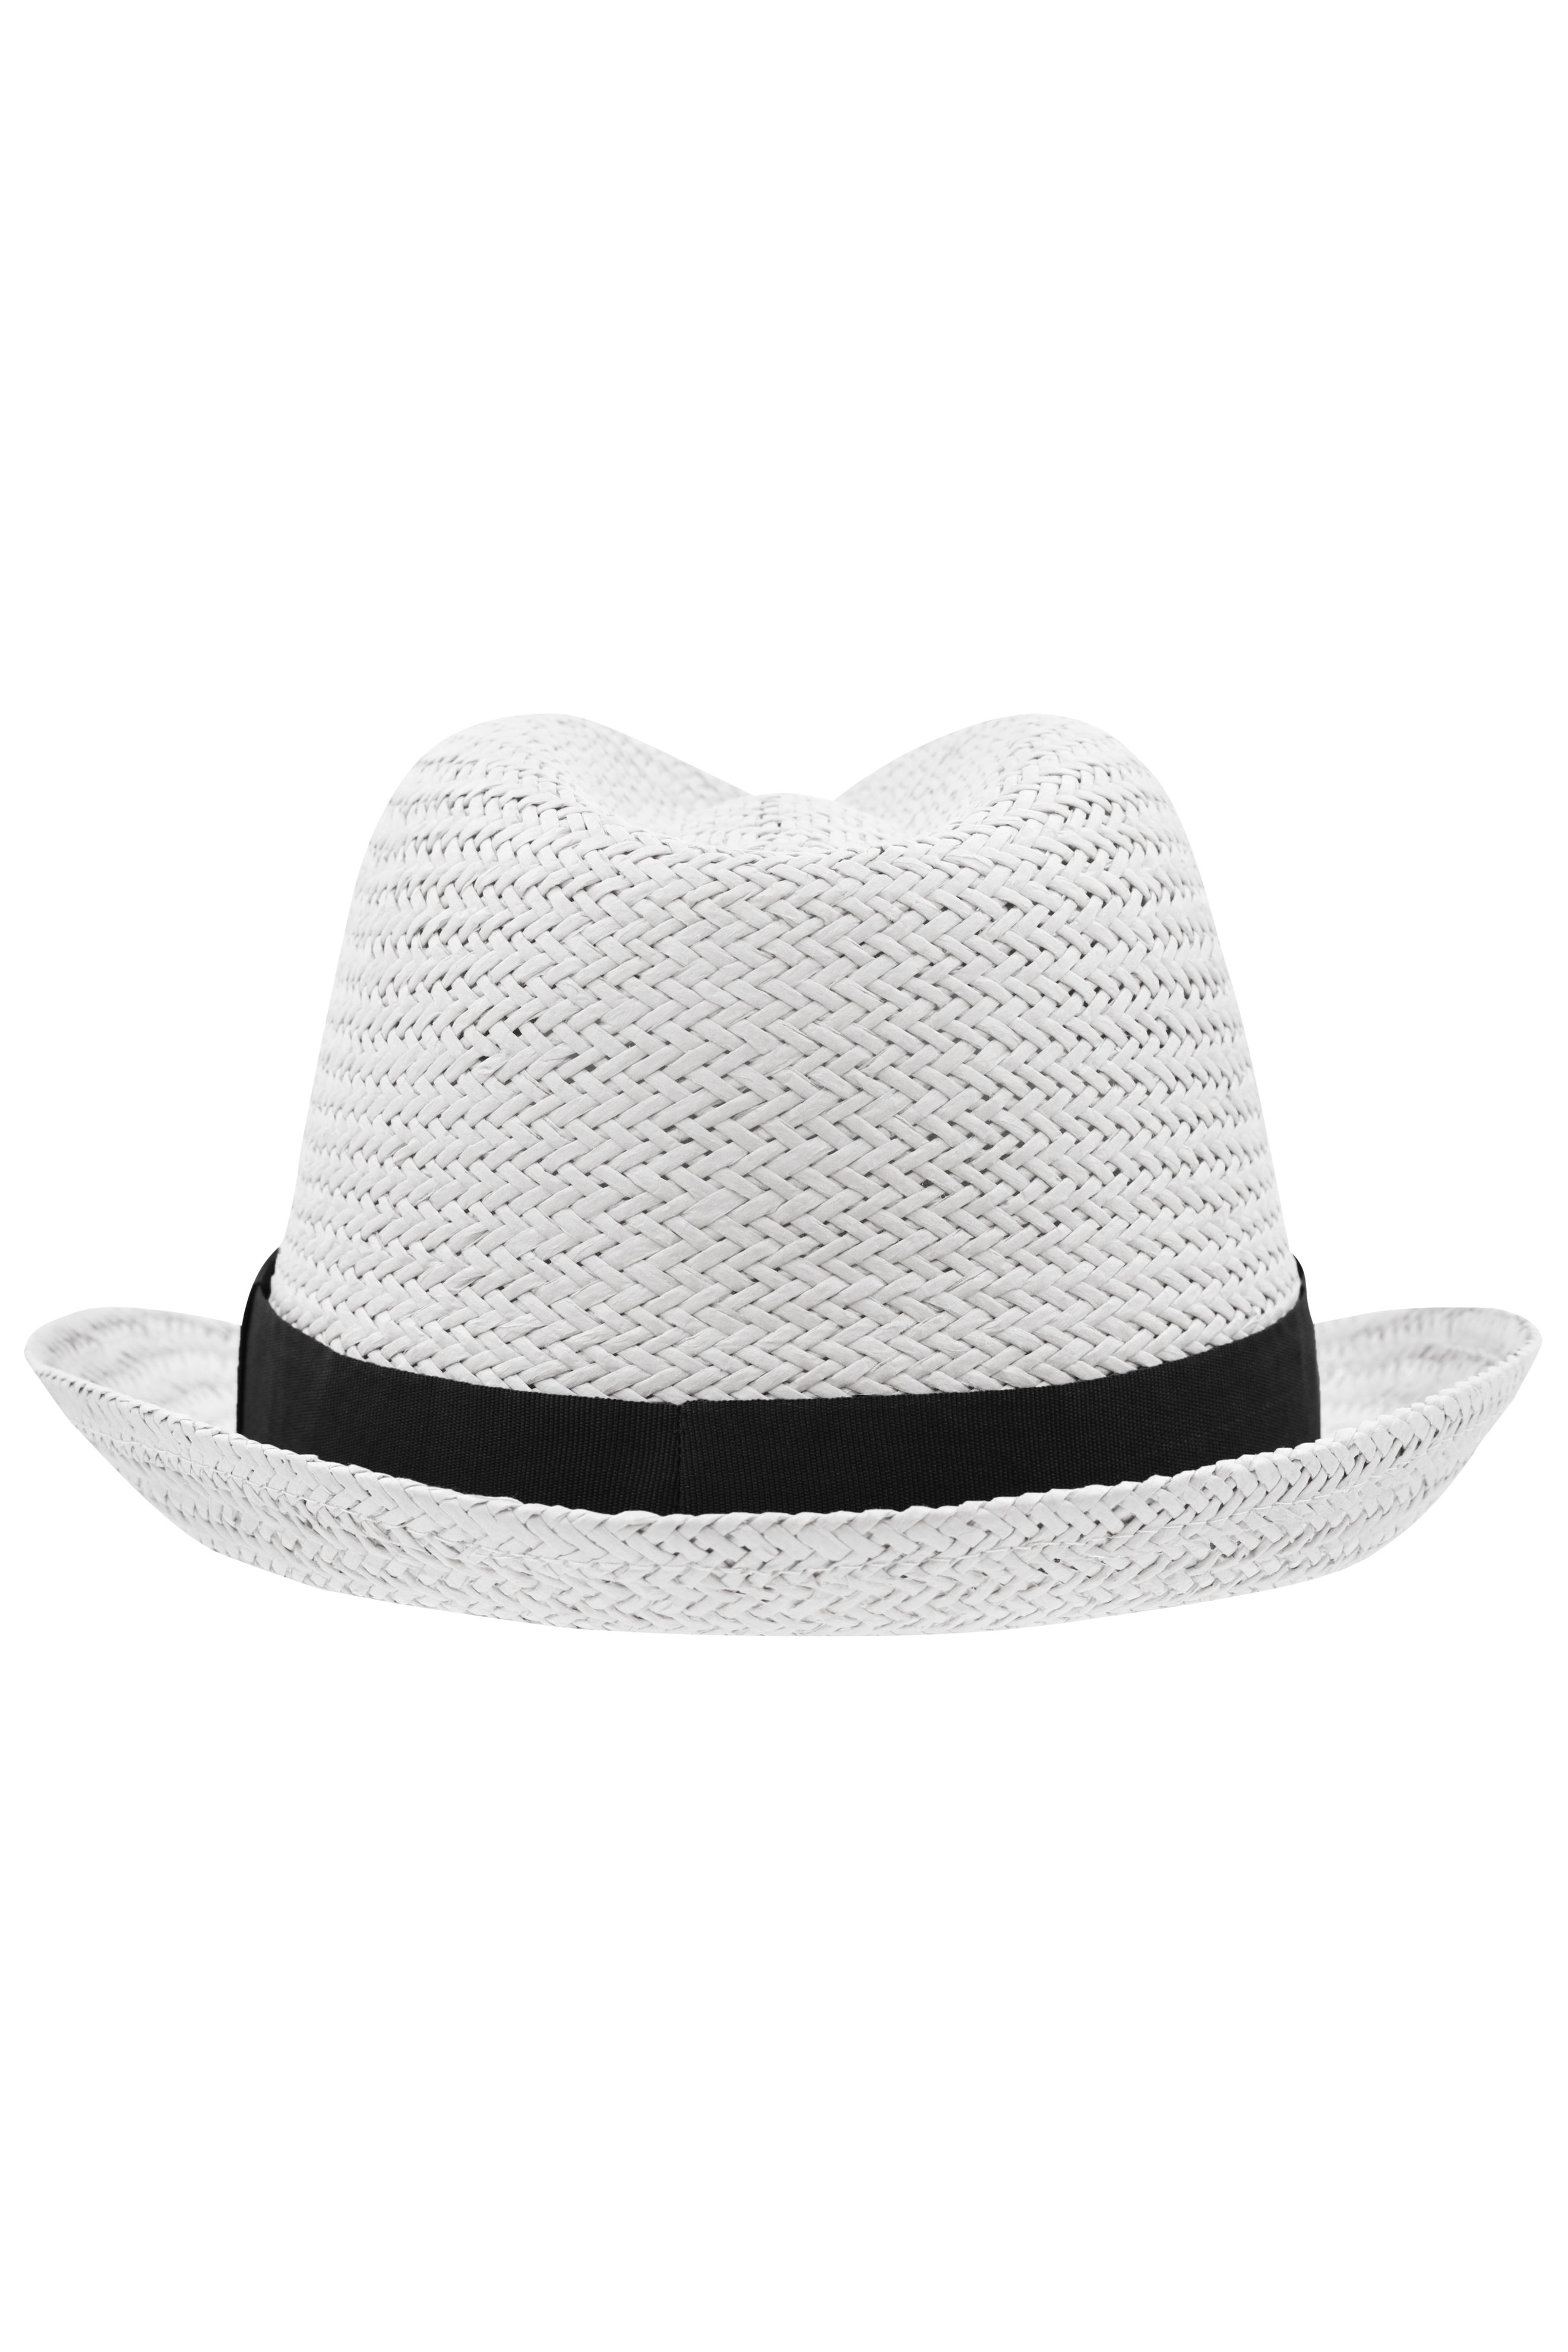 Unisex Urban Hat White/black-Promotextilien.de